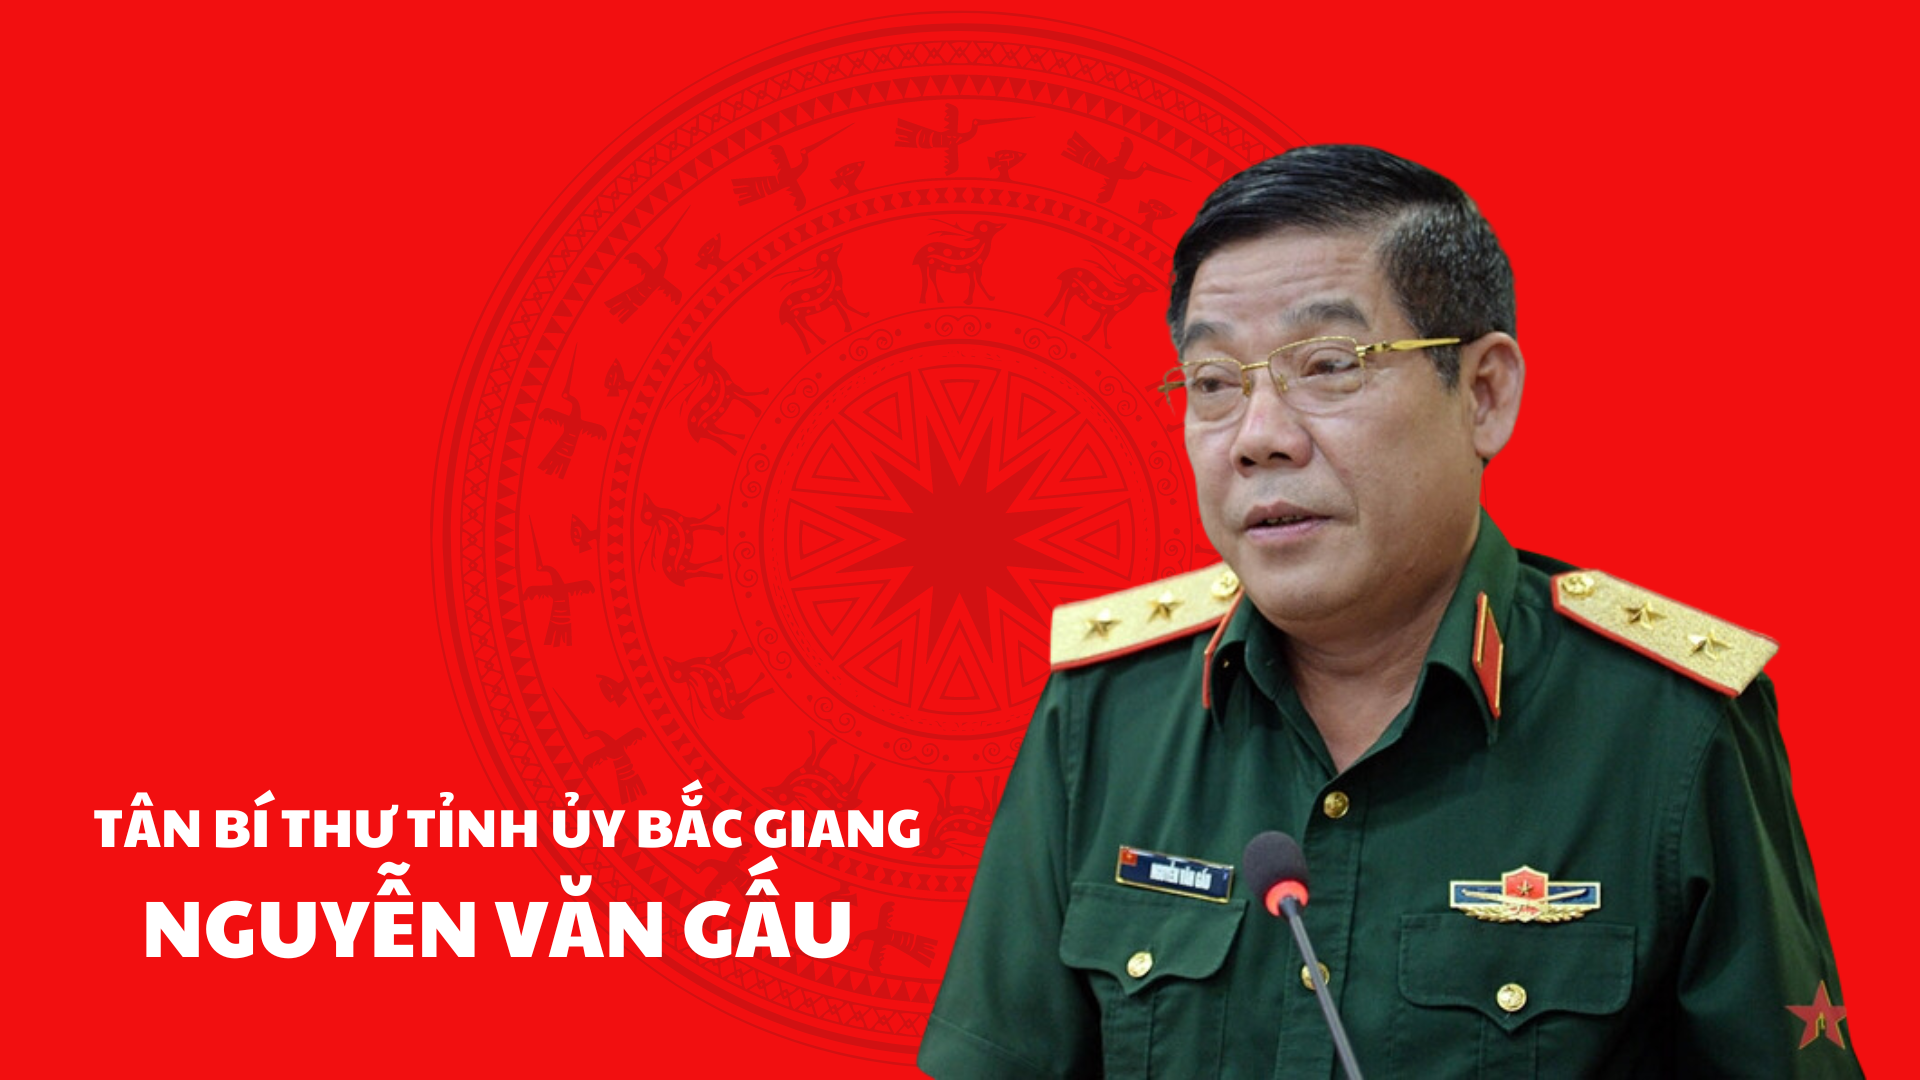 Chân dung tân Bí thư Tỉnh ủy Bắc Giang Nguyễn Văn Gấu